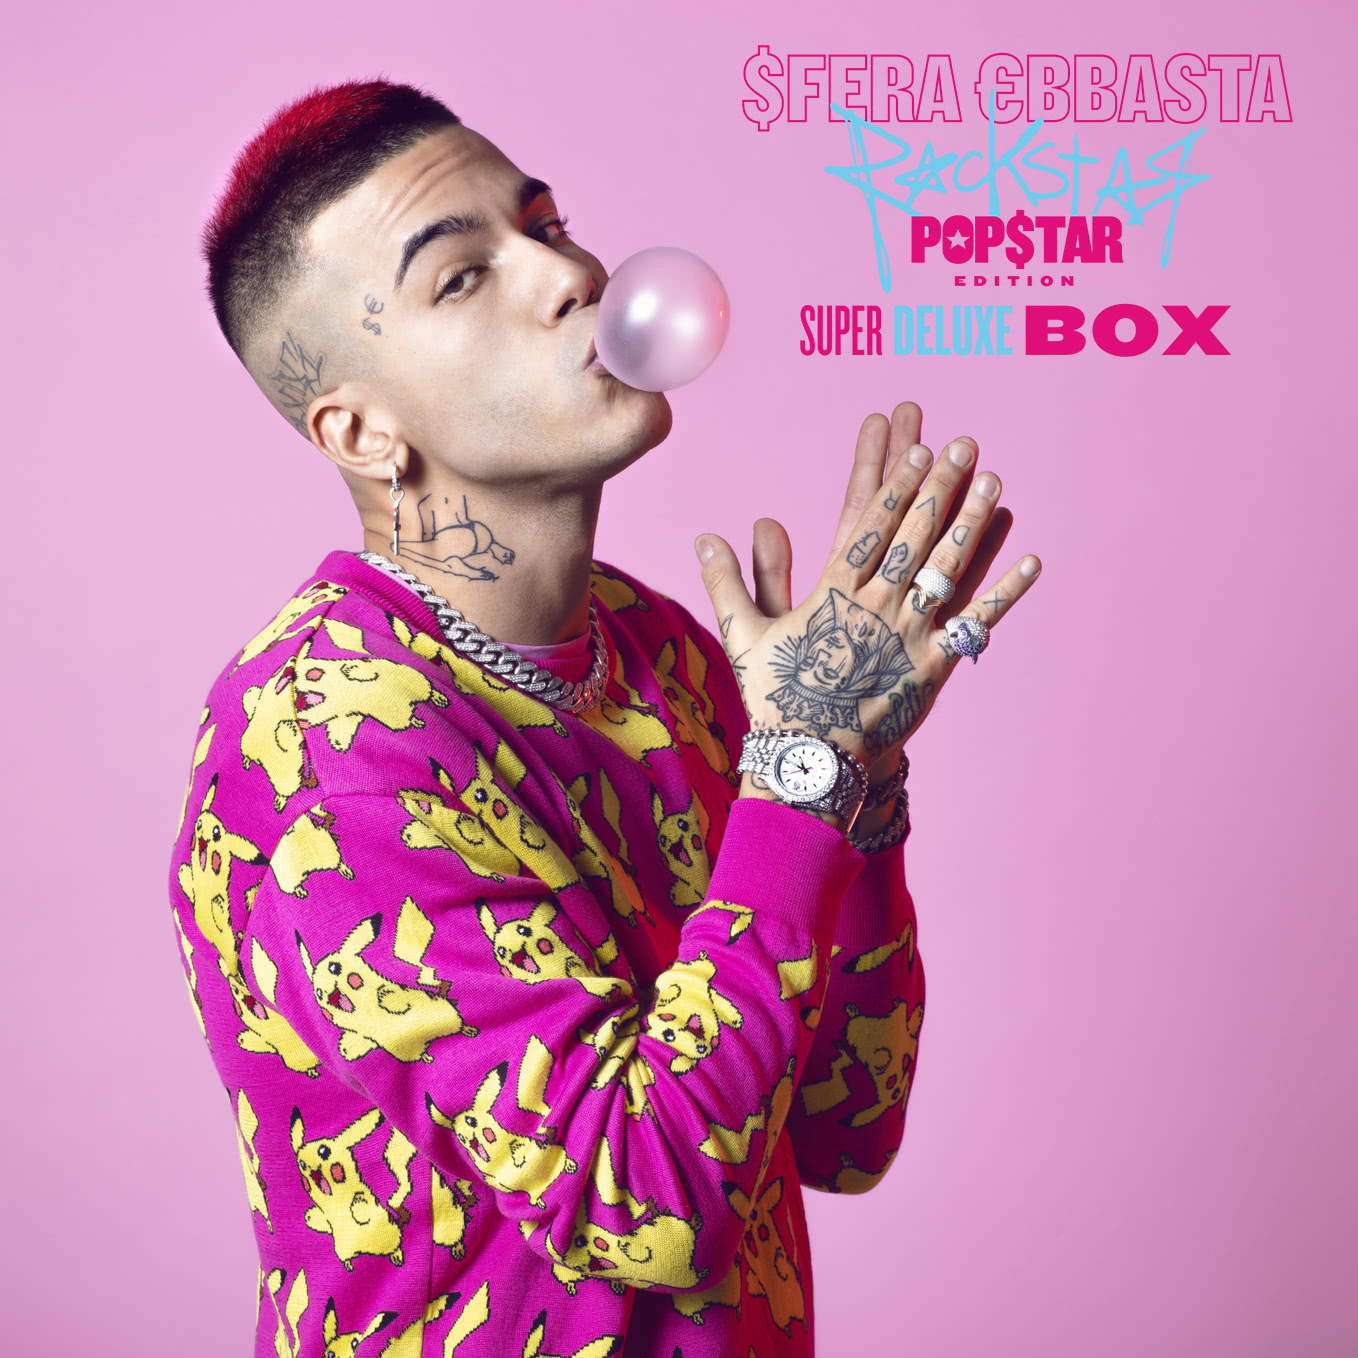 Sfera Ebbasta 'Rockstar (Popstar Edition) – Super Deluxe Box' in edizione  limitata e personalizzata